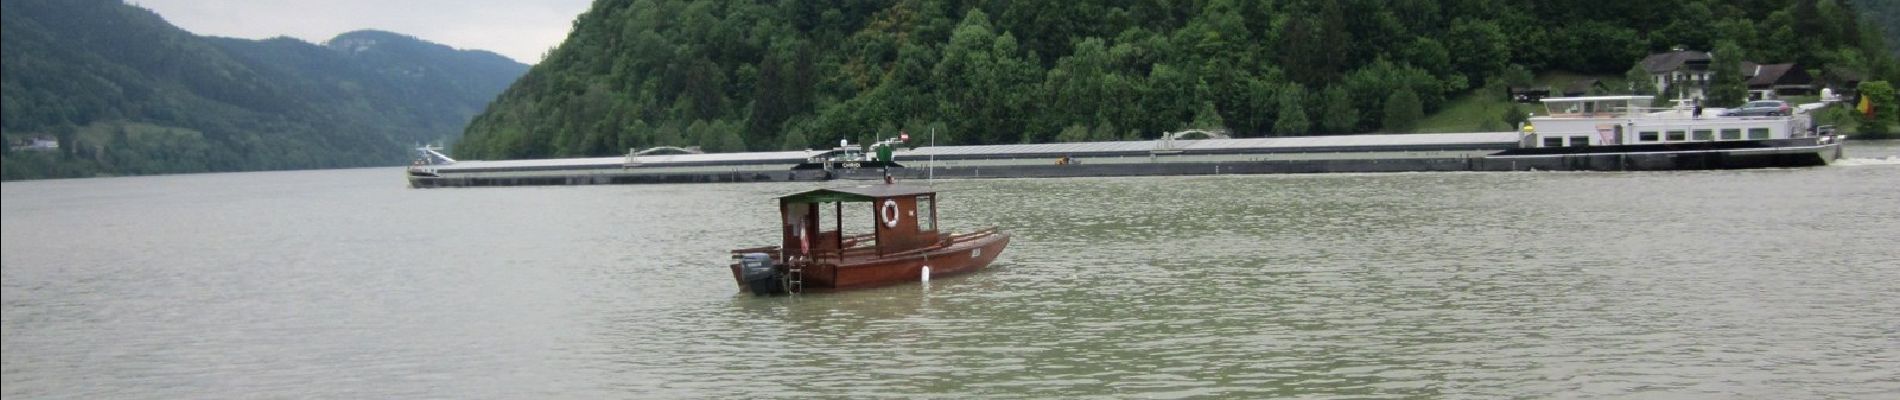 Tour Zu Fuß Haibach ob der Donau - Schlögener Blick - Photo